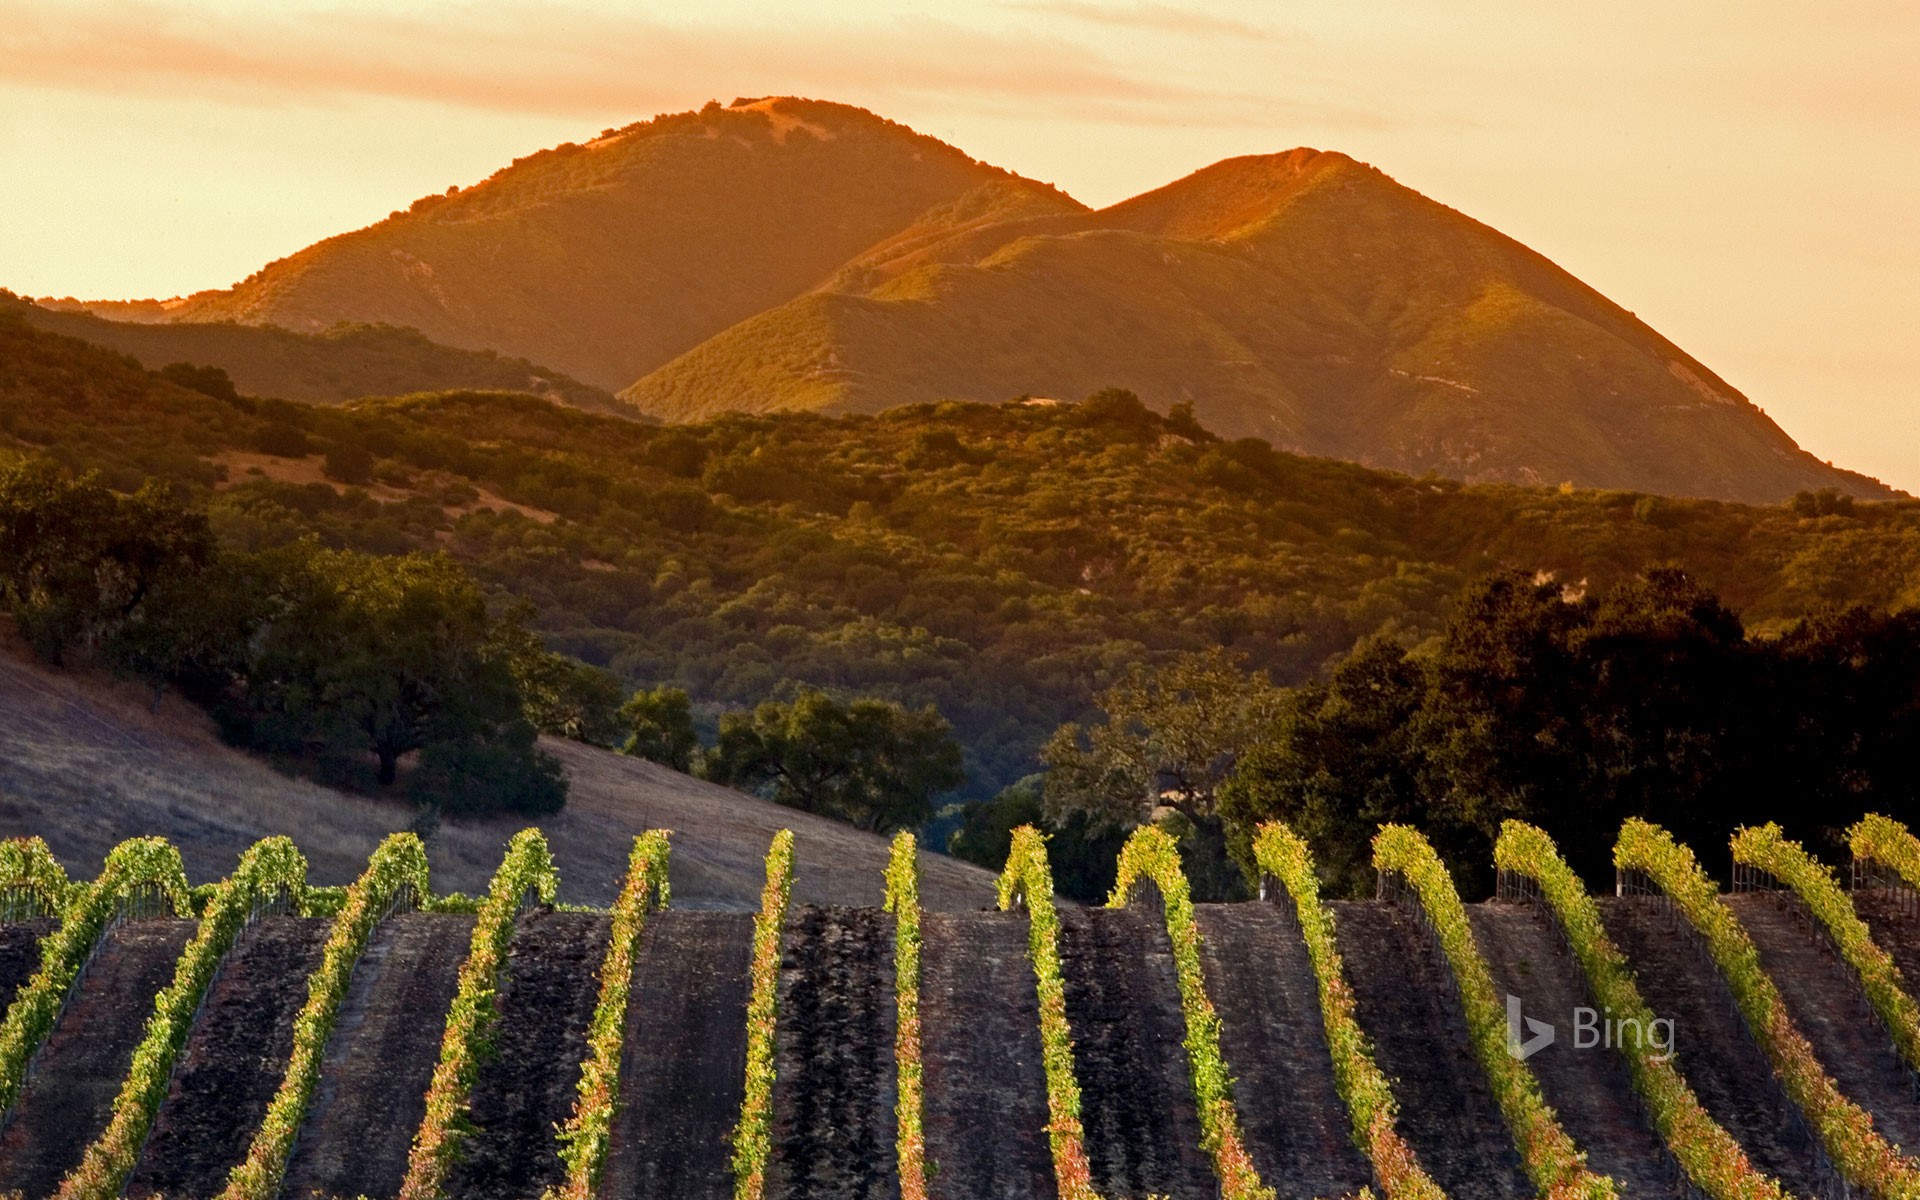 Central Coast vineyards in Arroyo Grande, California